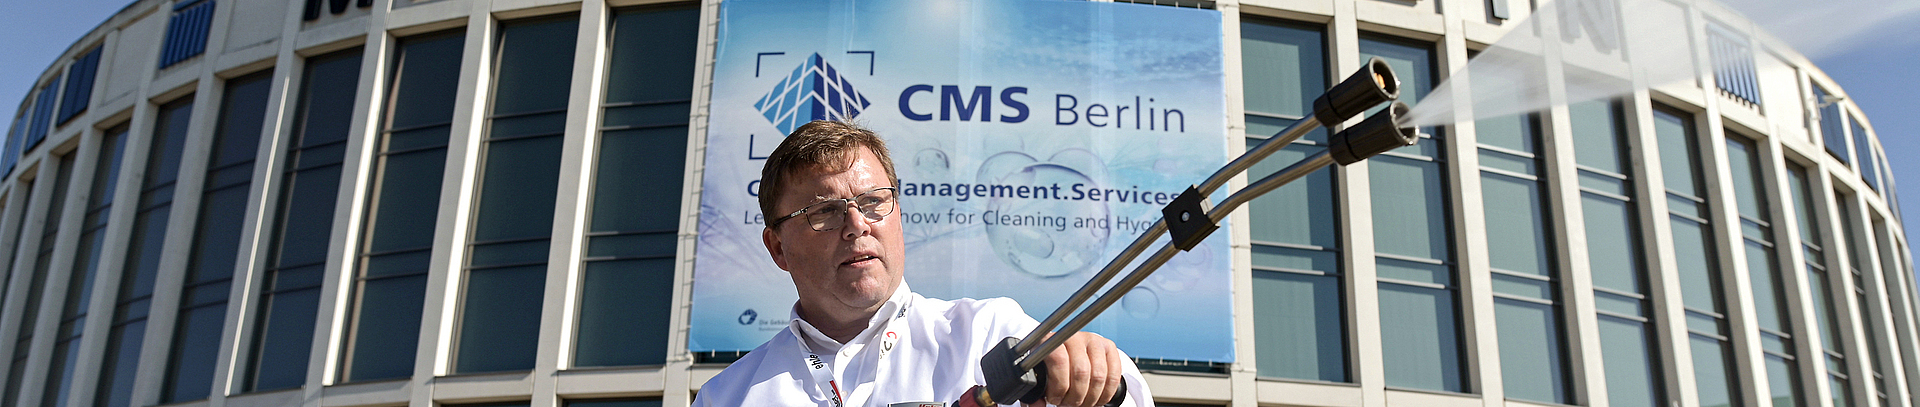 Mann führt während der CMS Berlin den Einsatz von Wasserdruckstrahlern vor dem Gebäude der Messe Berlin vor.